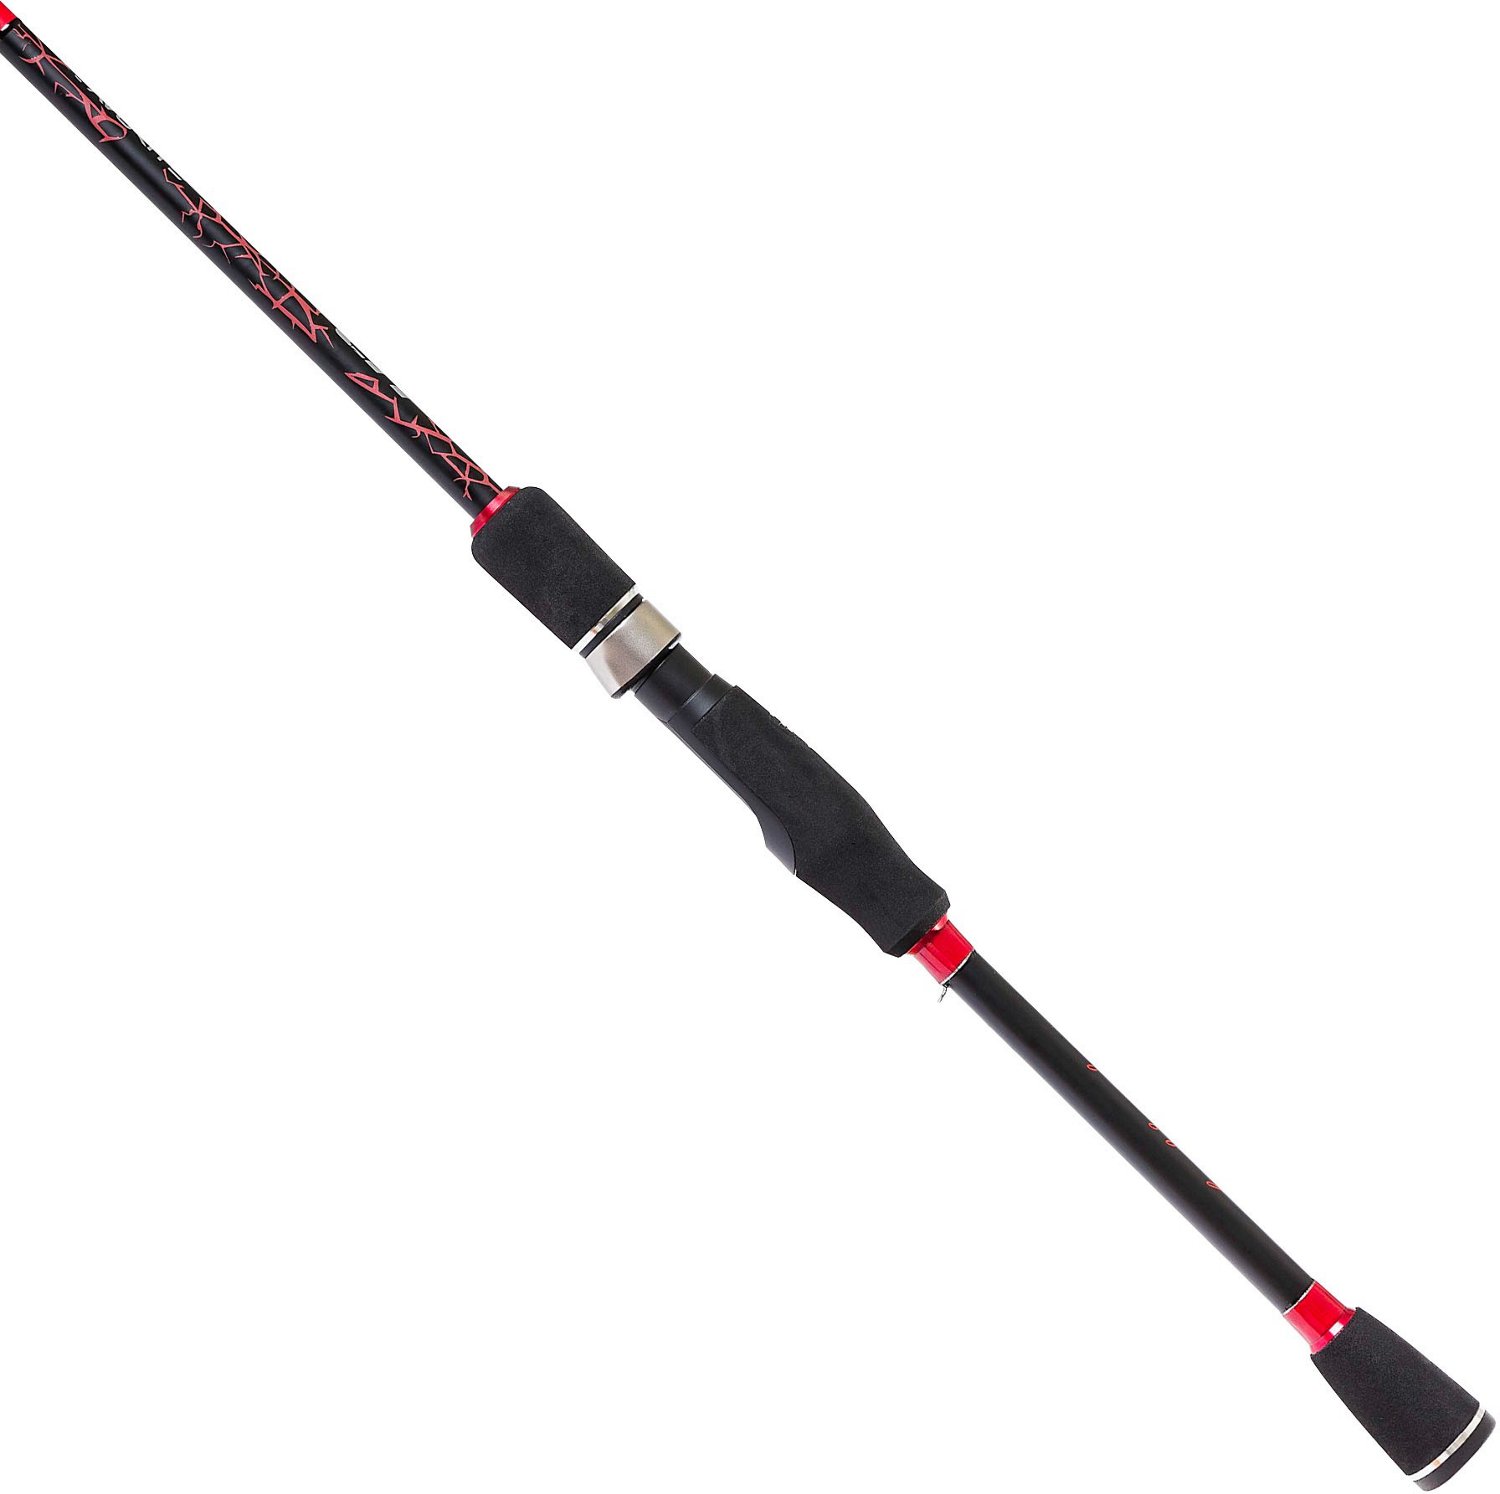 Favorite Fishing PBF Lit Spinning Rod